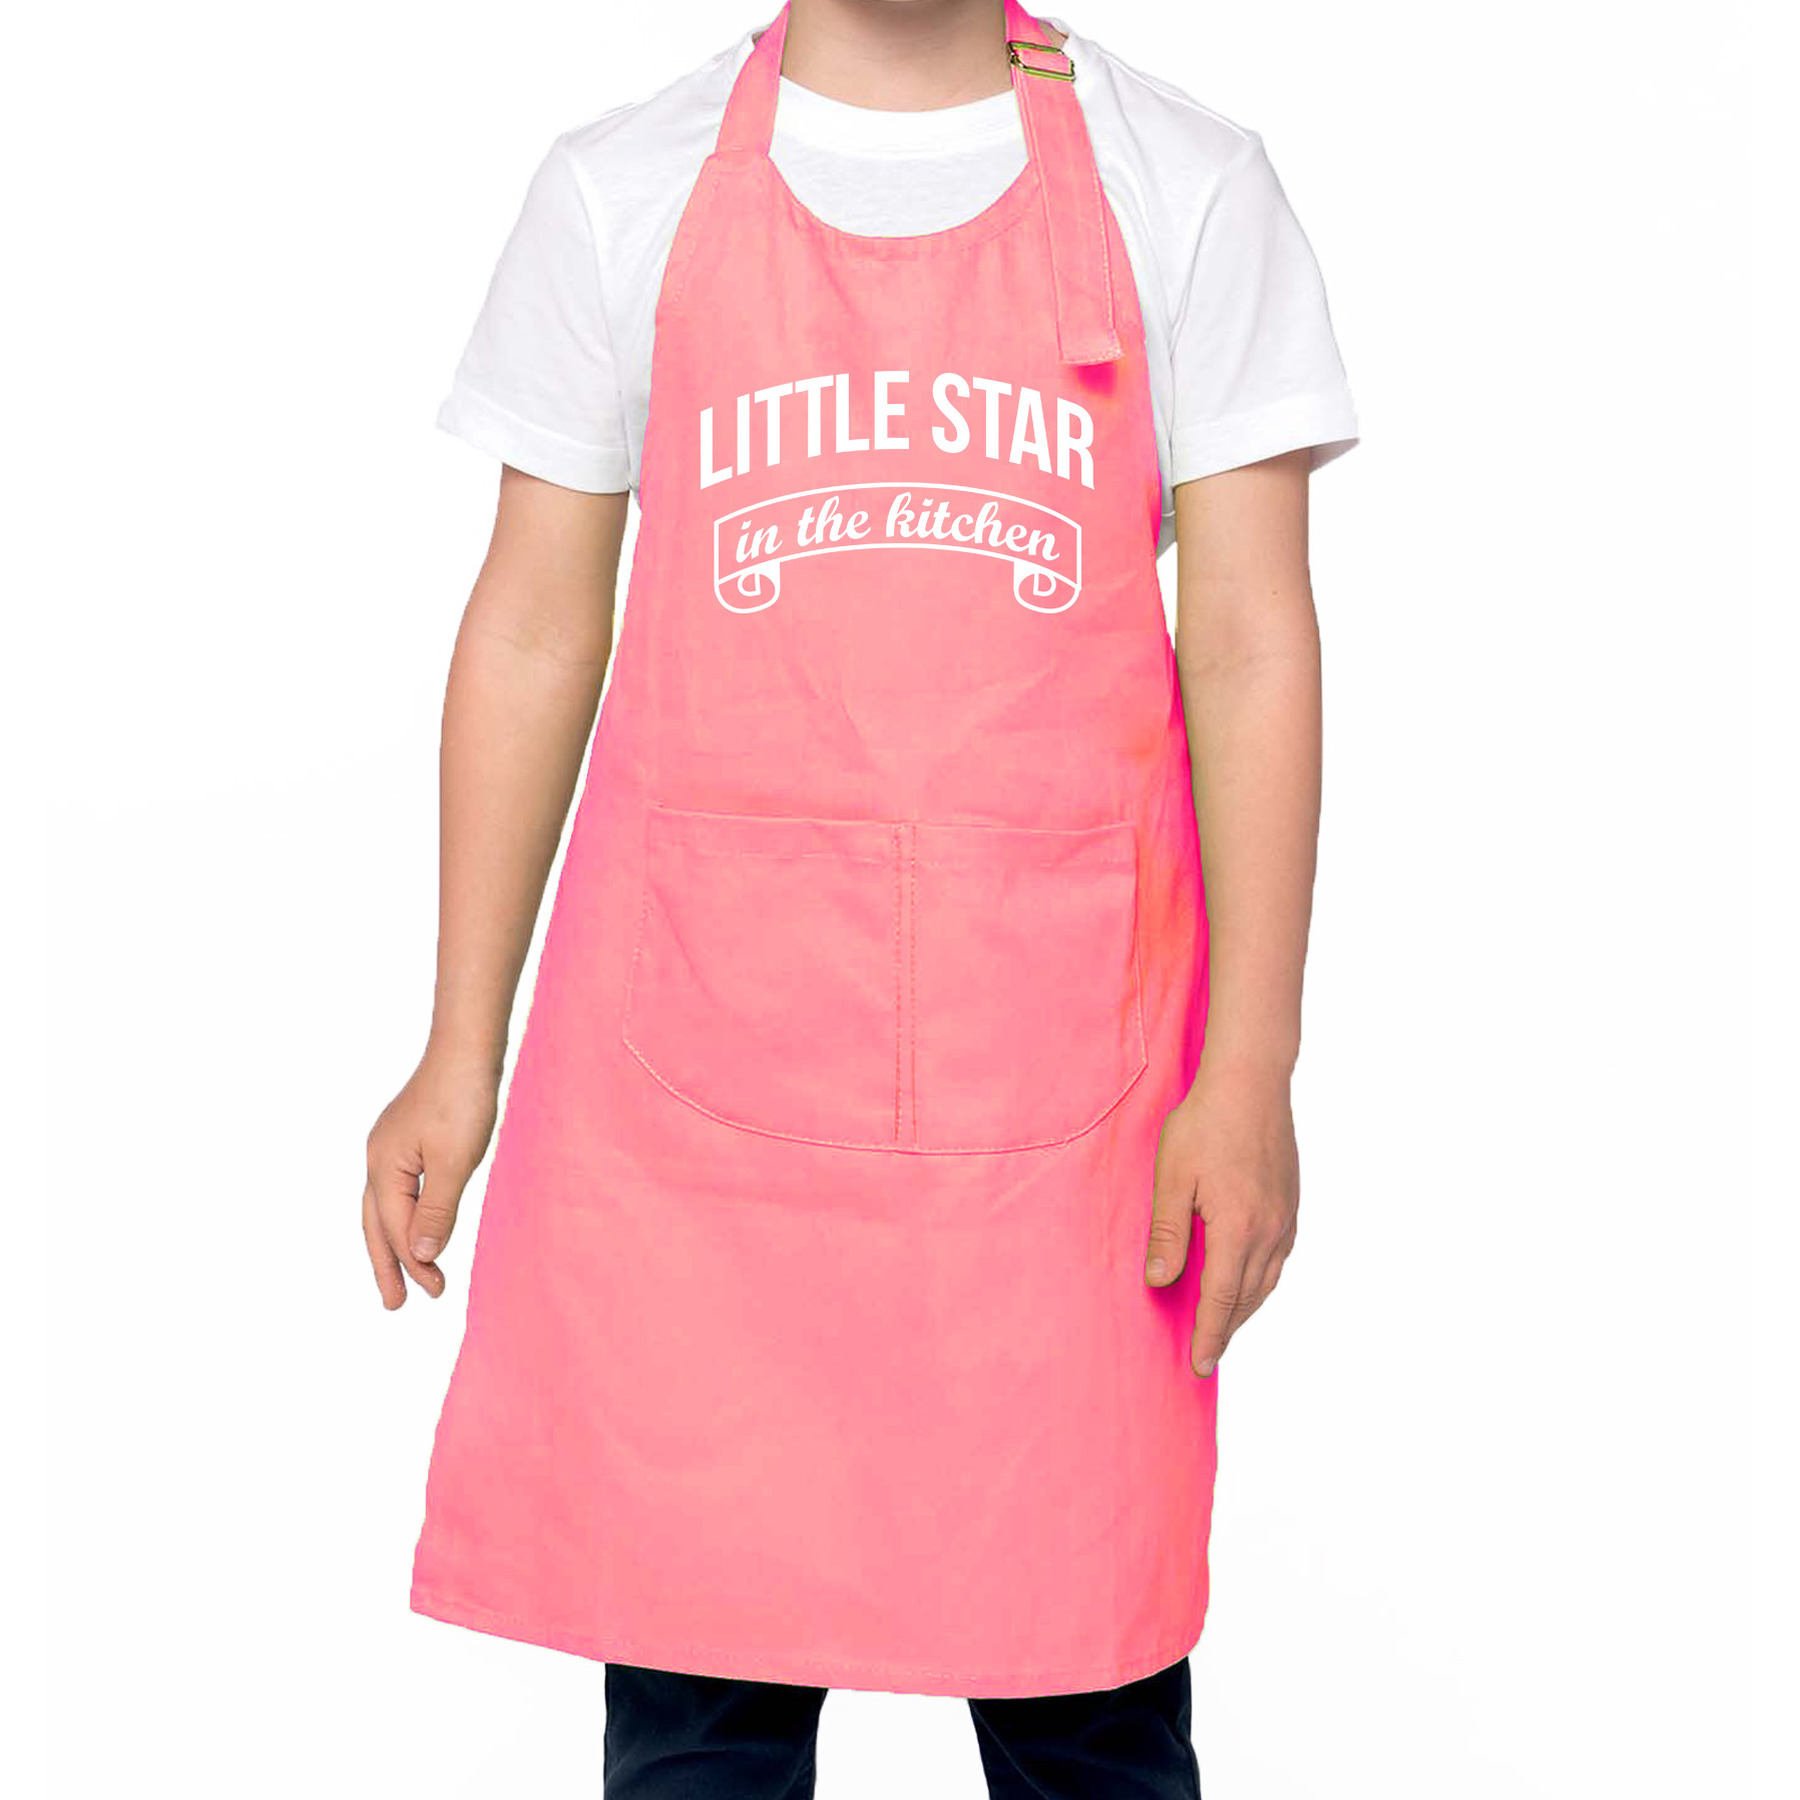 Little star in the kitchen Keukenschort kinderen/ kinder schort roze voor jongens en meisjes